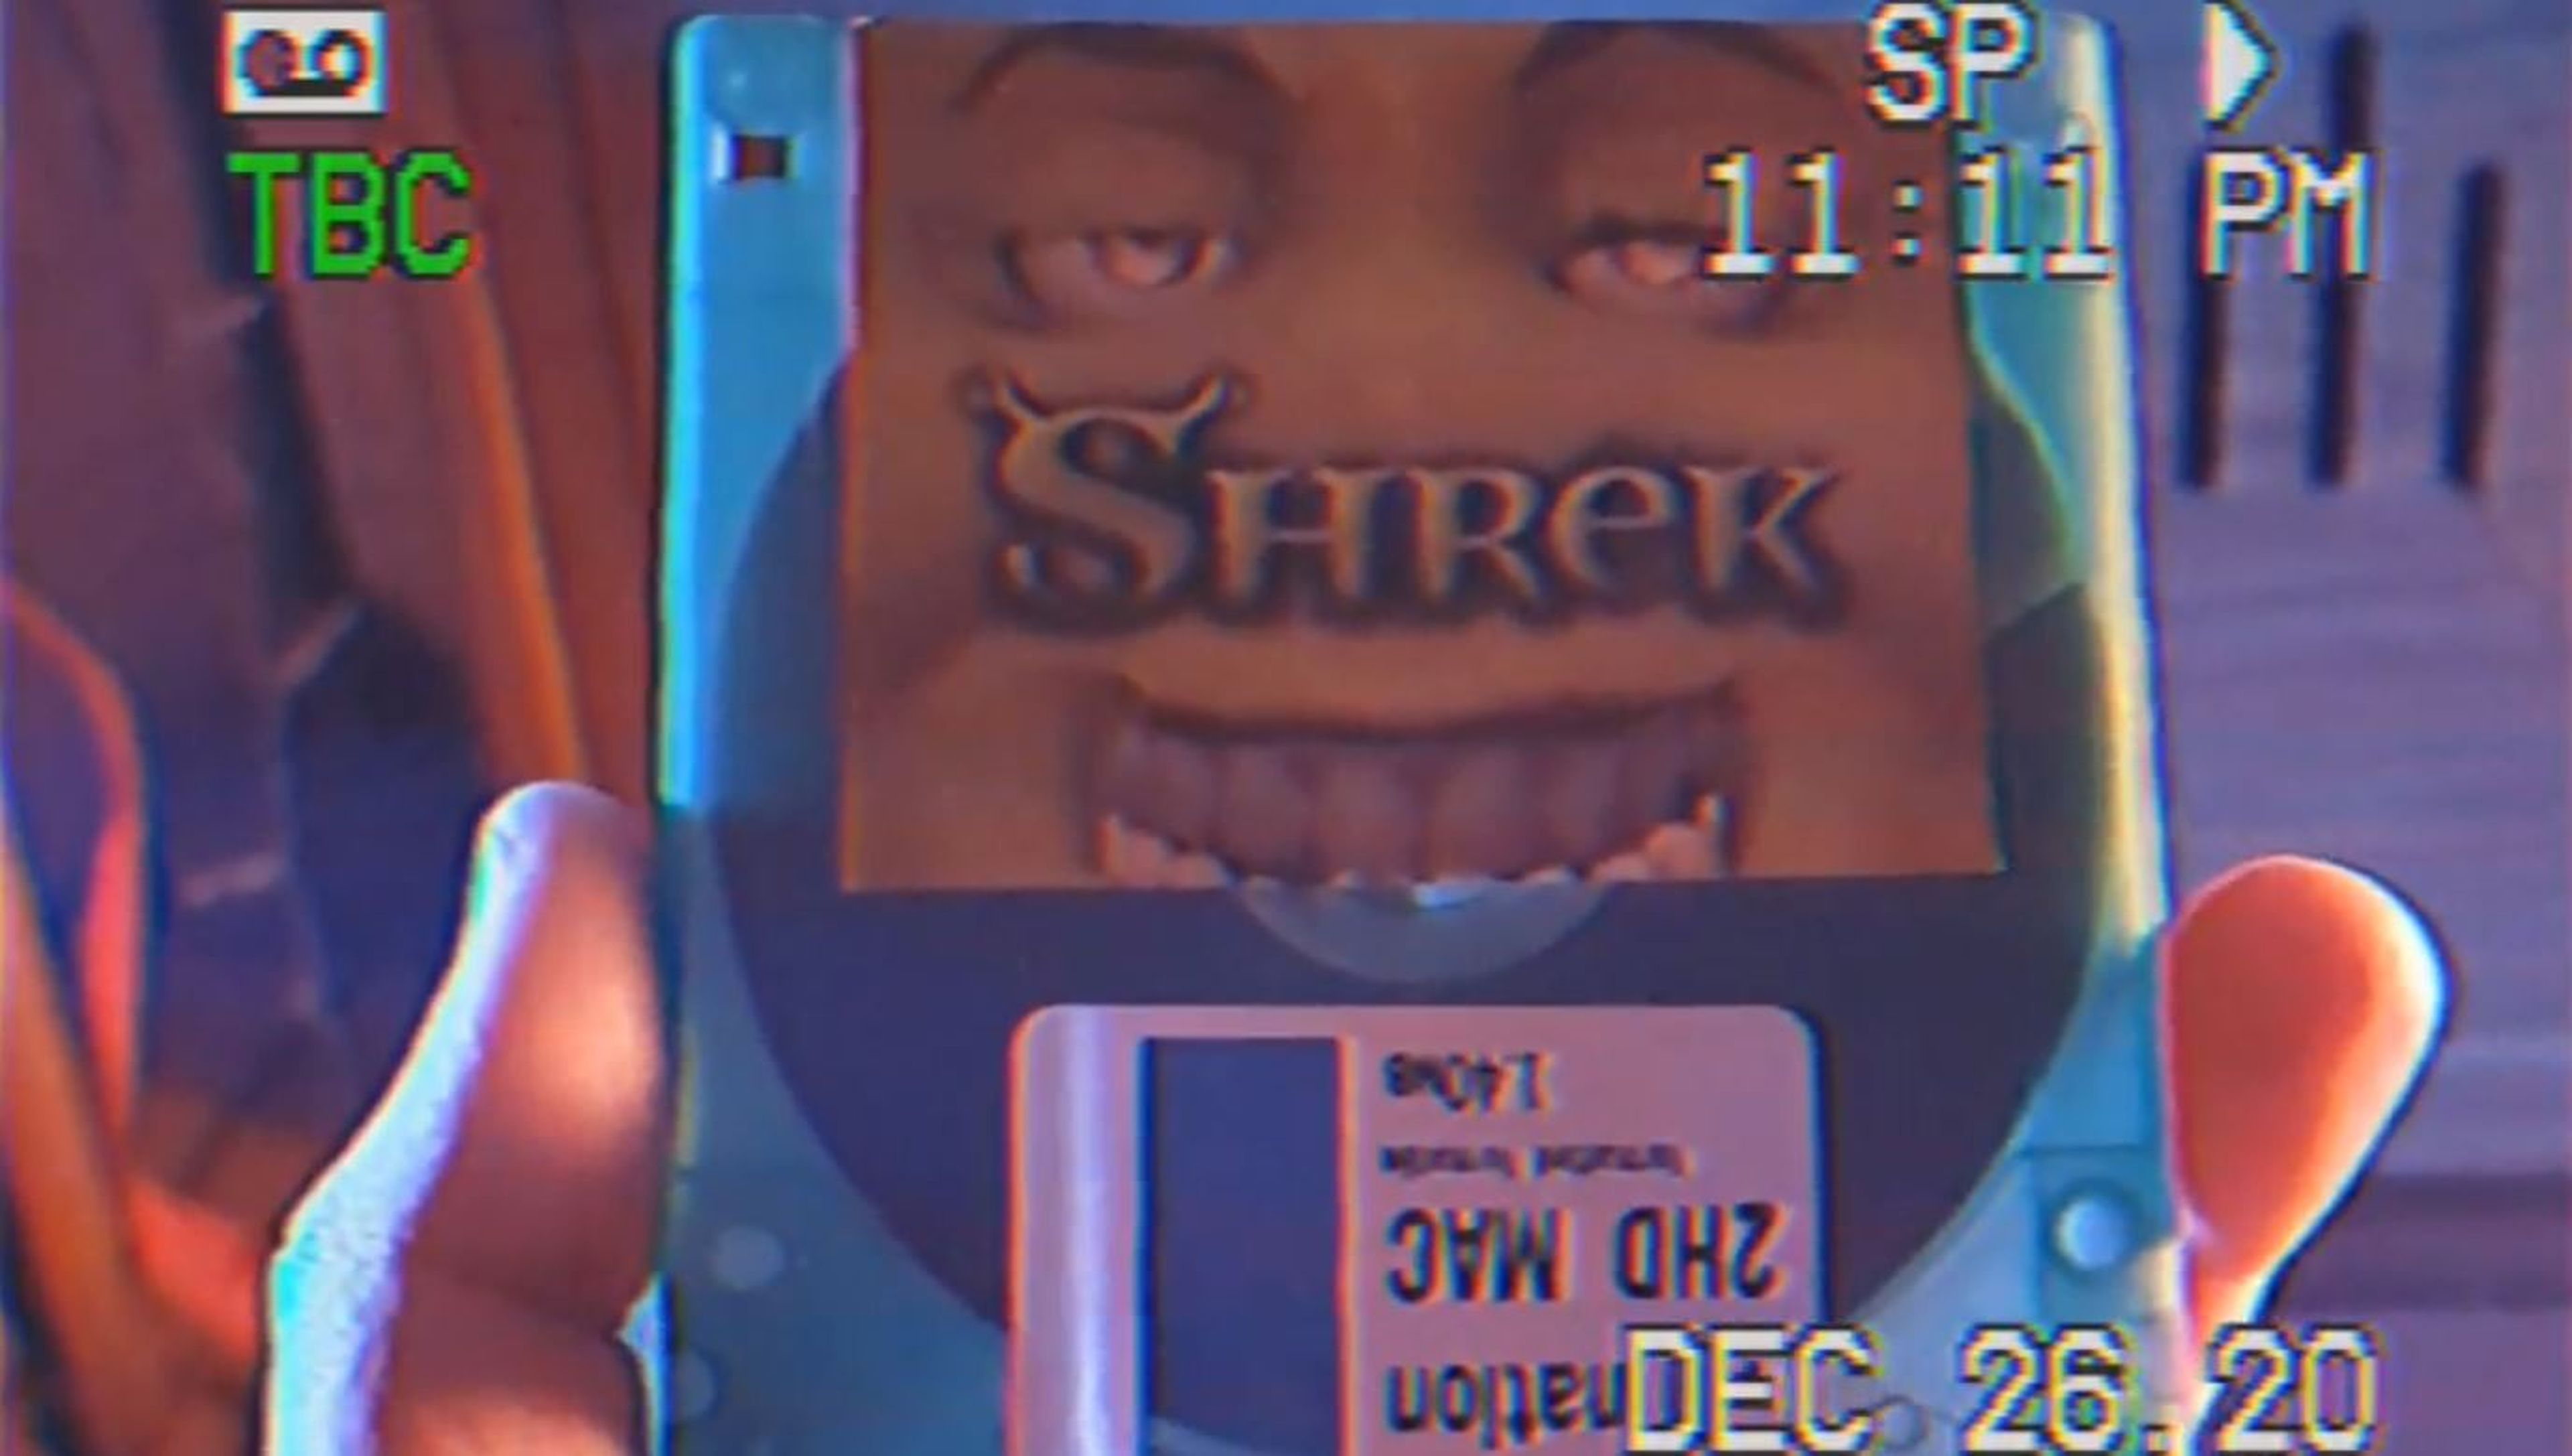 Shrek disquete